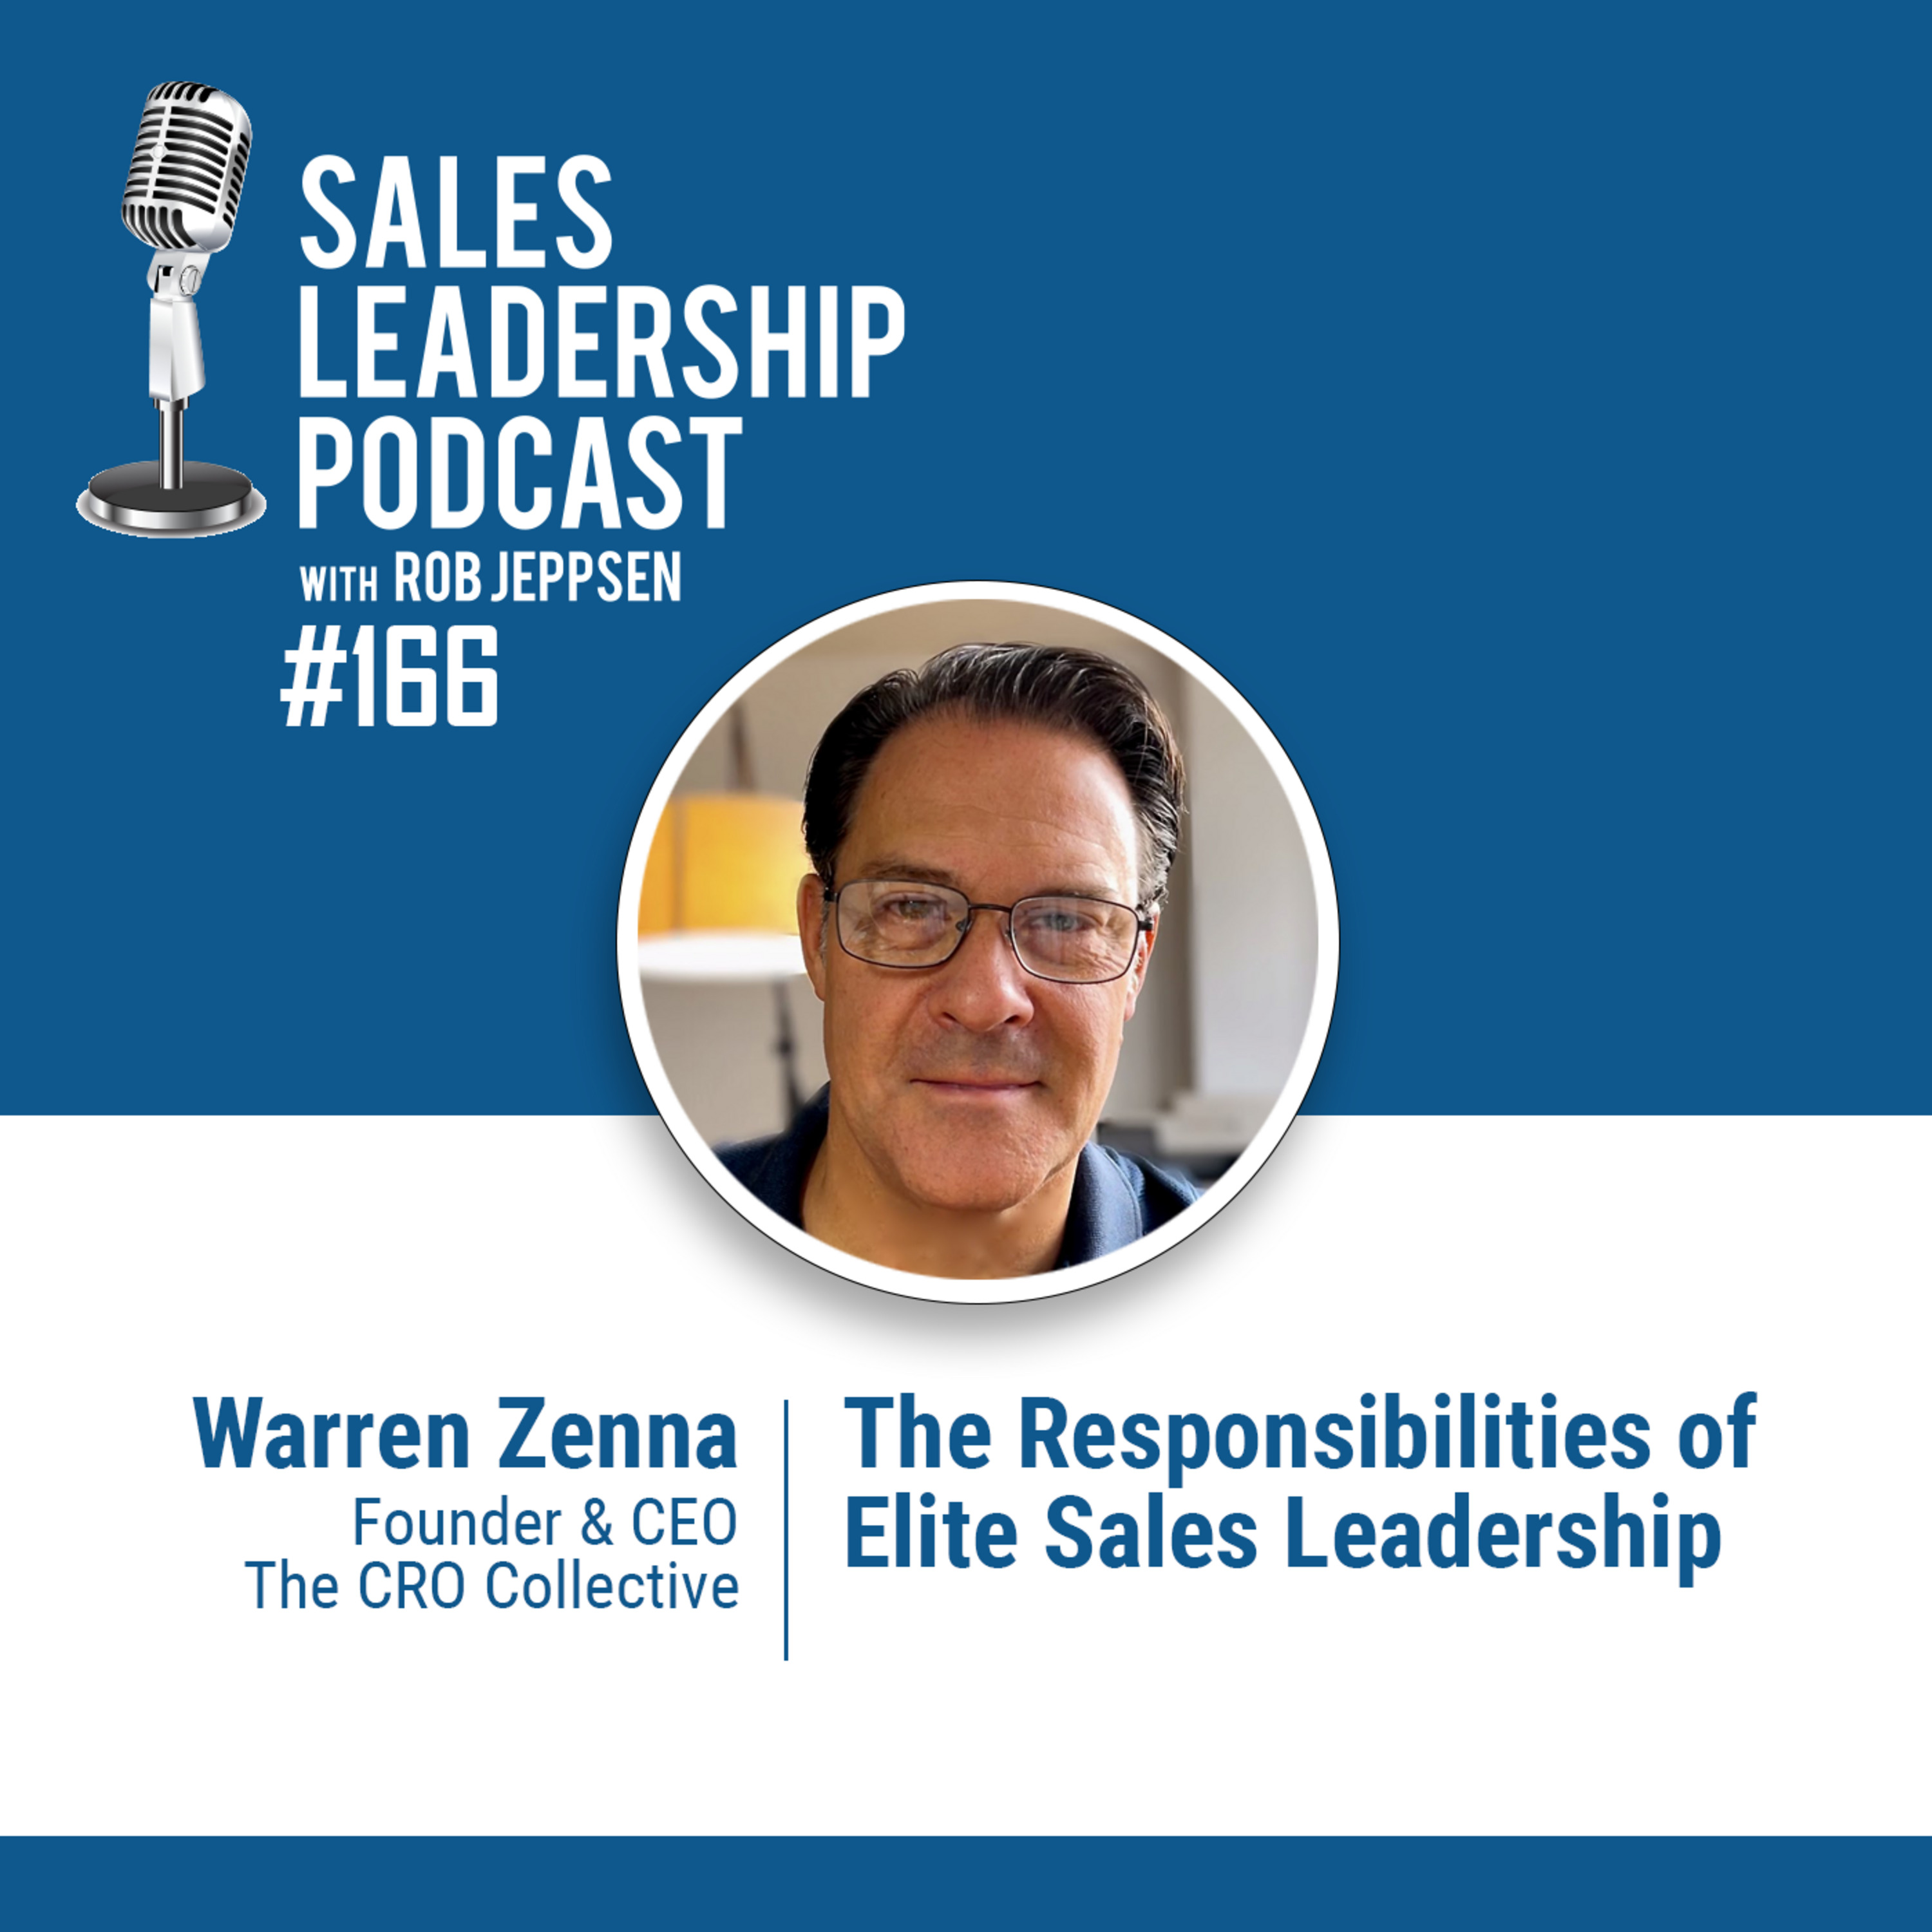 Episode 167: #166: Warren Zenna of The CRO Collective — The Responsibilities of Elite Sales Leadership